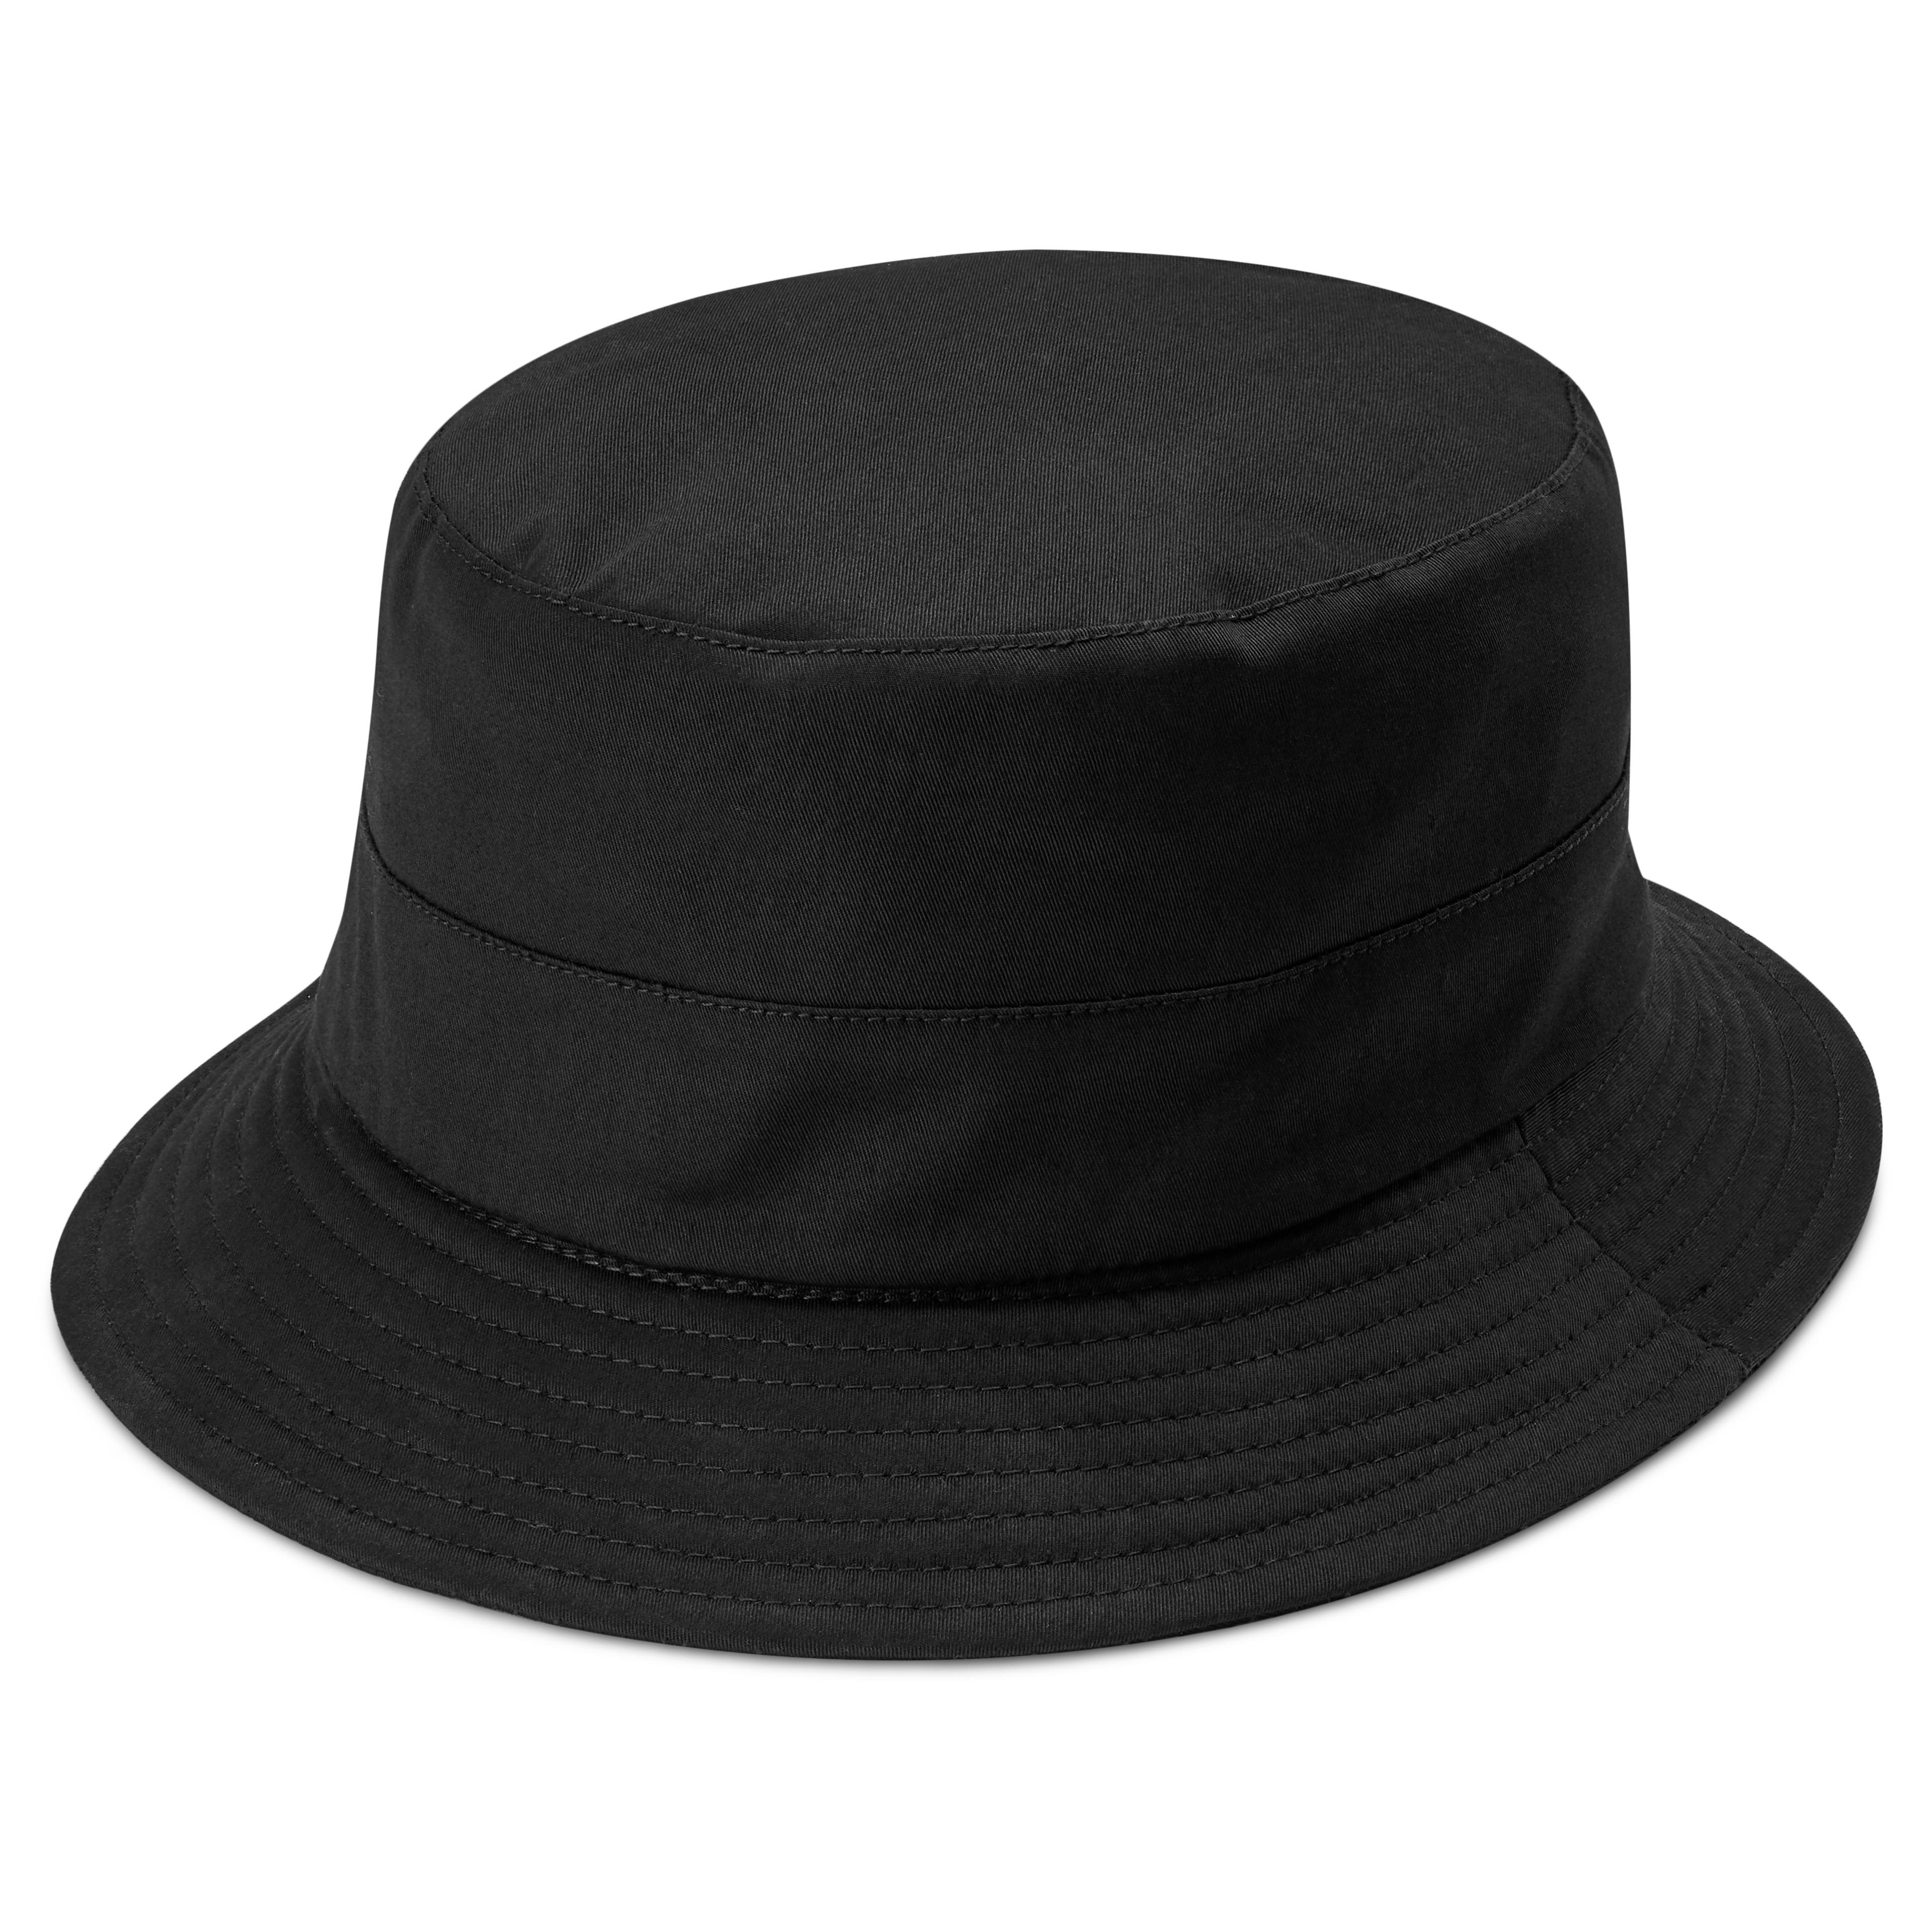 Gino čierny vodeodolný klobúk Moda v Bucket štýle